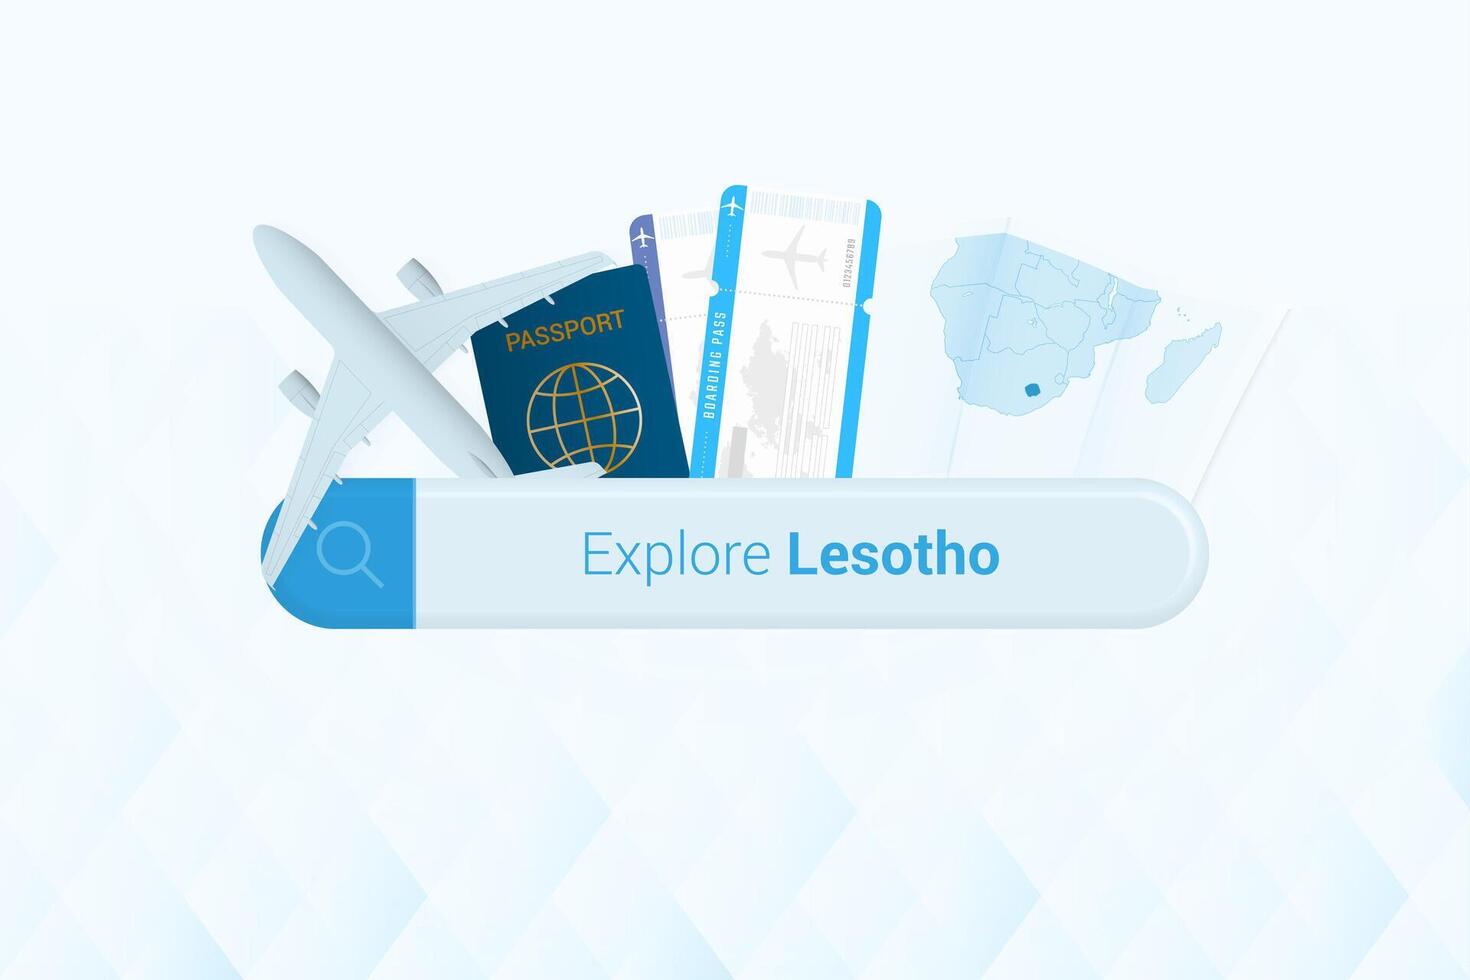 recherche des billets à Lesotho ou Voyage destination dans Lesotho. recherche bar avec avion, passeport, embarquement passer, des billets et carte. vecteur